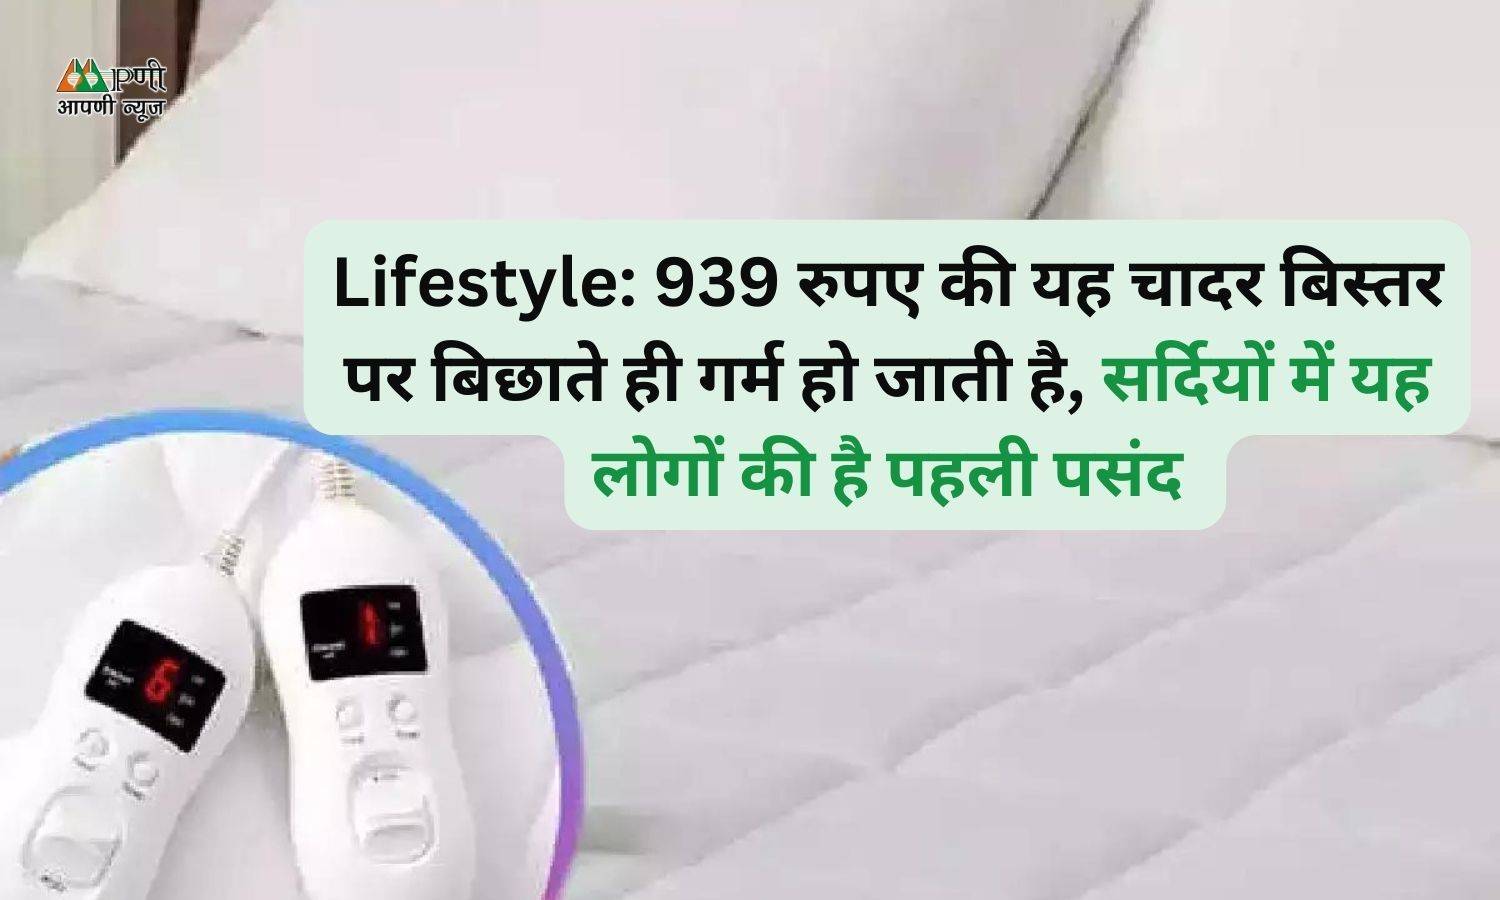 Lifestyle: 939 रुपए की यह चादर बिस्तर पर बिछाते ही गर्म हो जाती है, सर्दियों में यह लोगों की है पहली पसंद